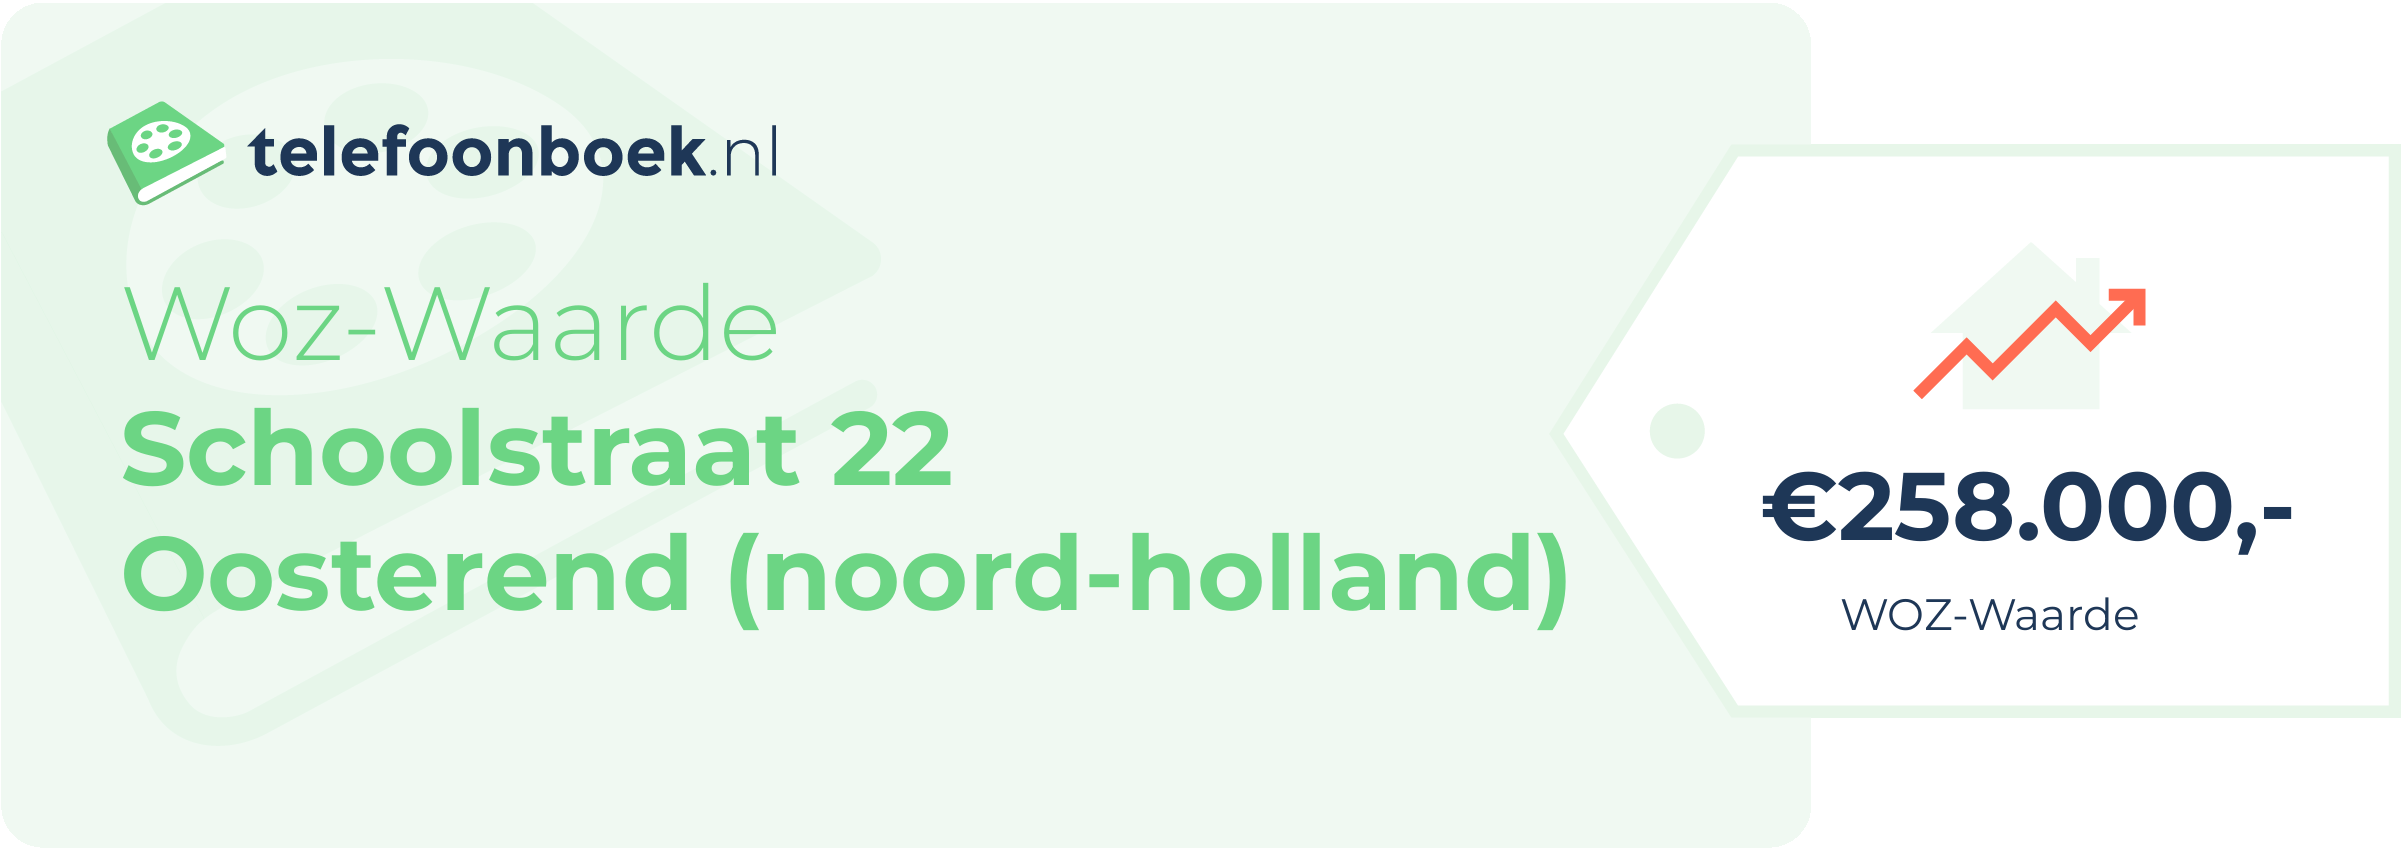 WOZ-waarde Schoolstraat 22 Oosterend (Noord-Holland)